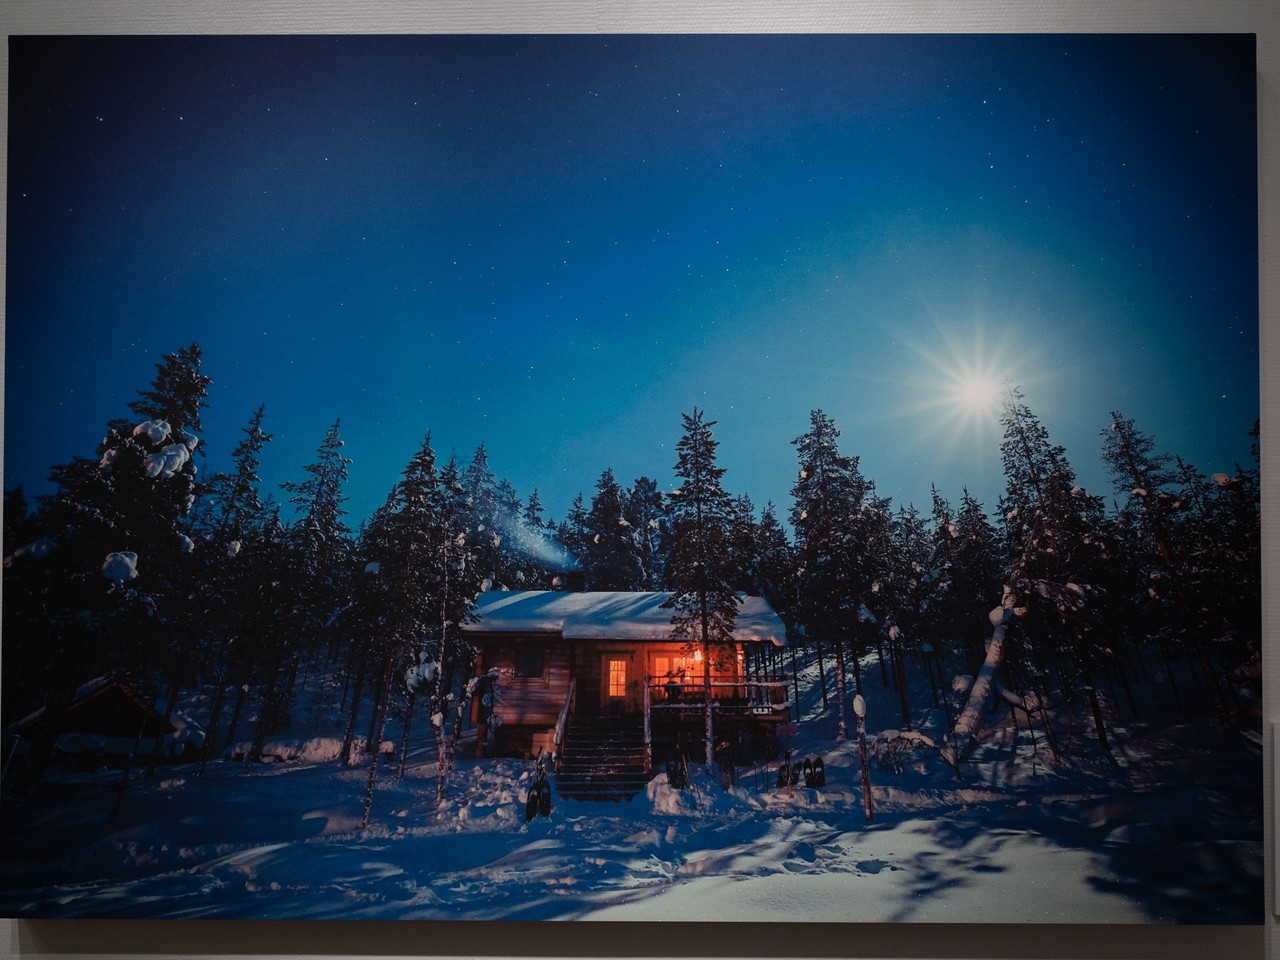 横田裕市写真展 フィンランド 冬の光 展示作品紹介 横田裕市 写真家